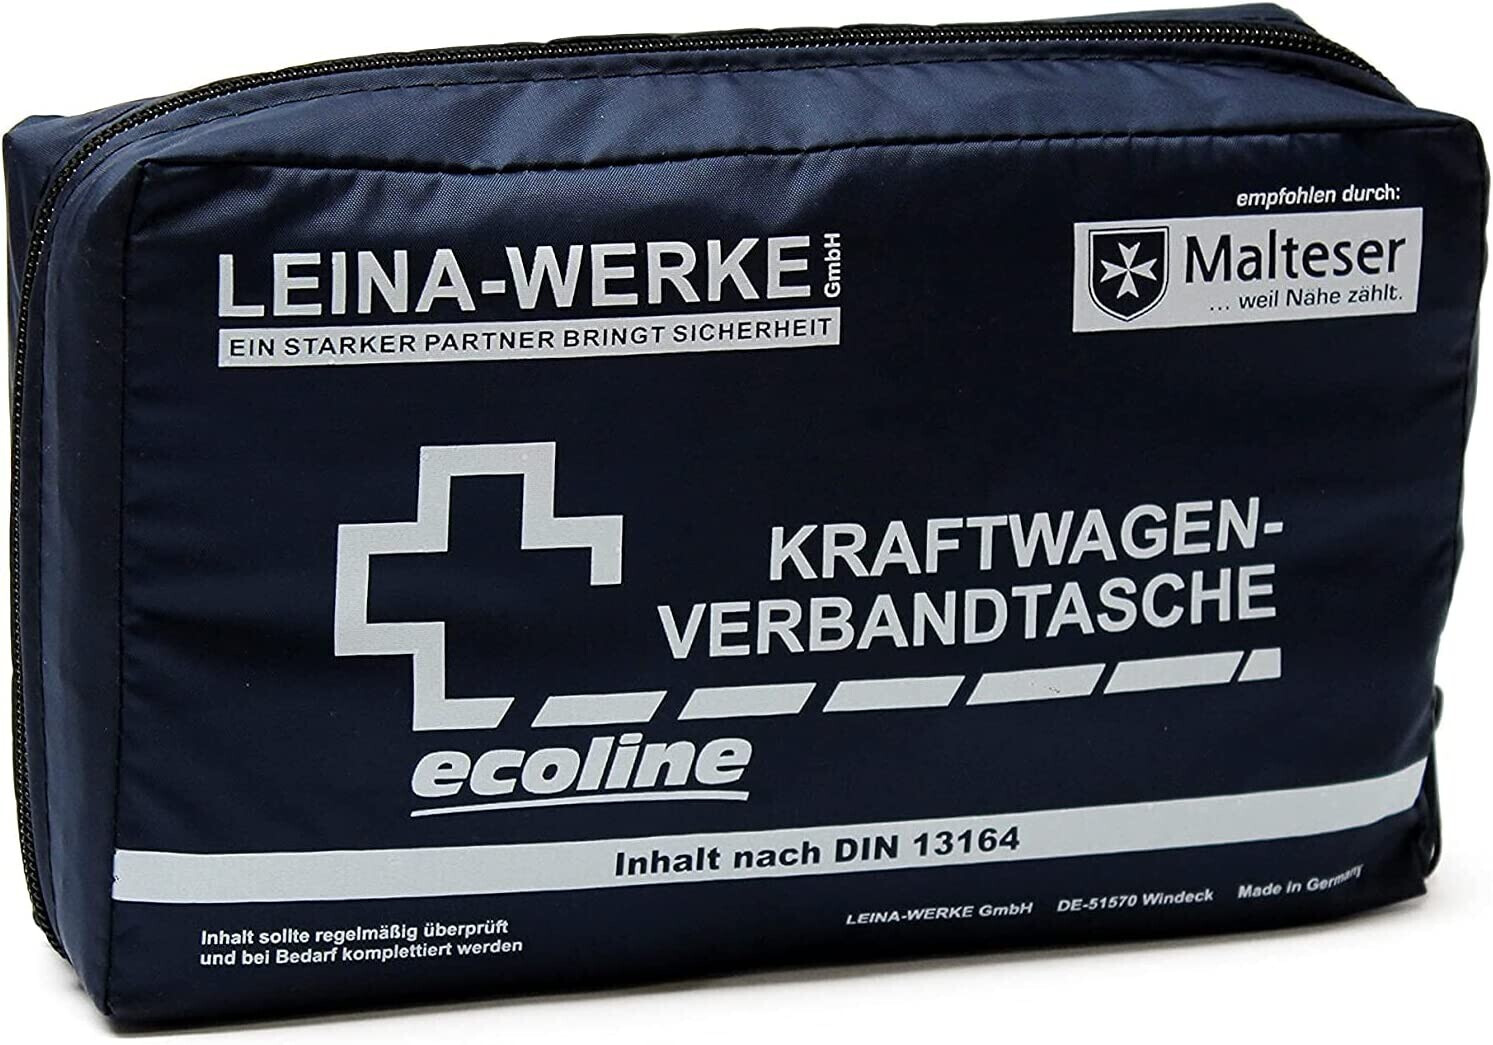 Leina-Werke Kraftwagen Verbandtasche ecoline DIN 13164 inkl. OP Masken ab  10,95 €